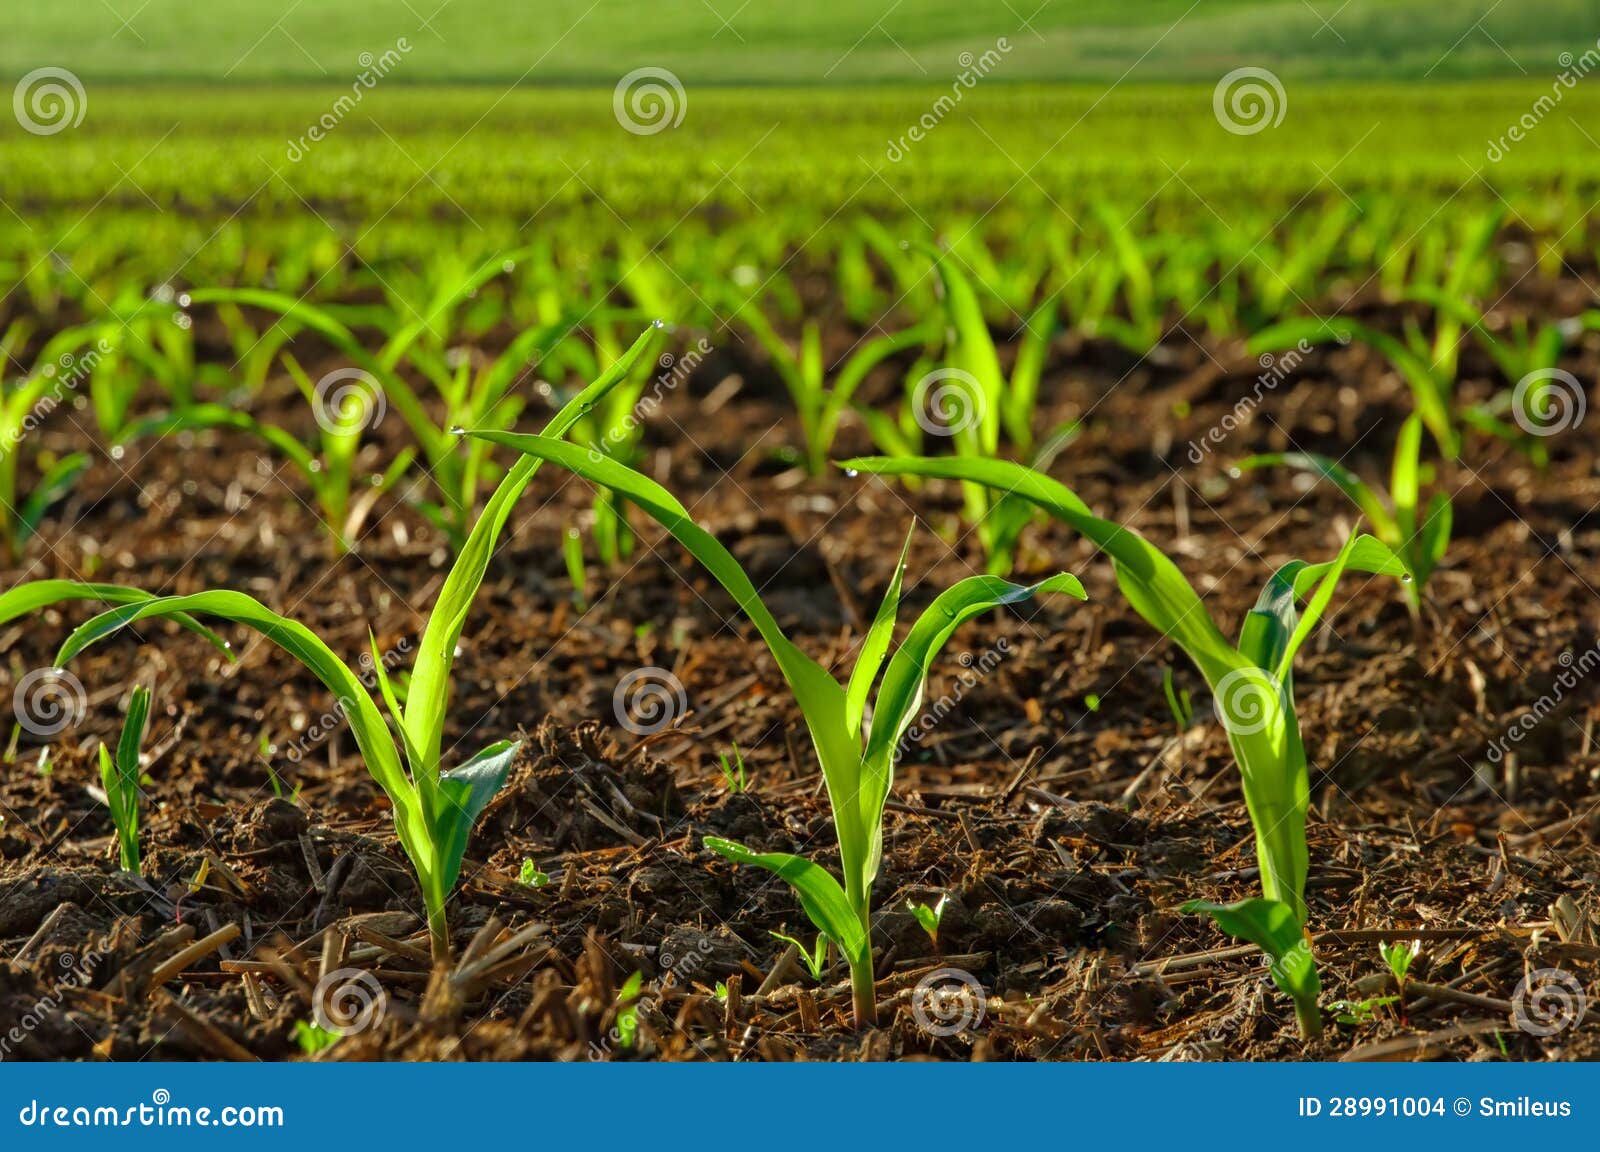 sunlit young corn plants